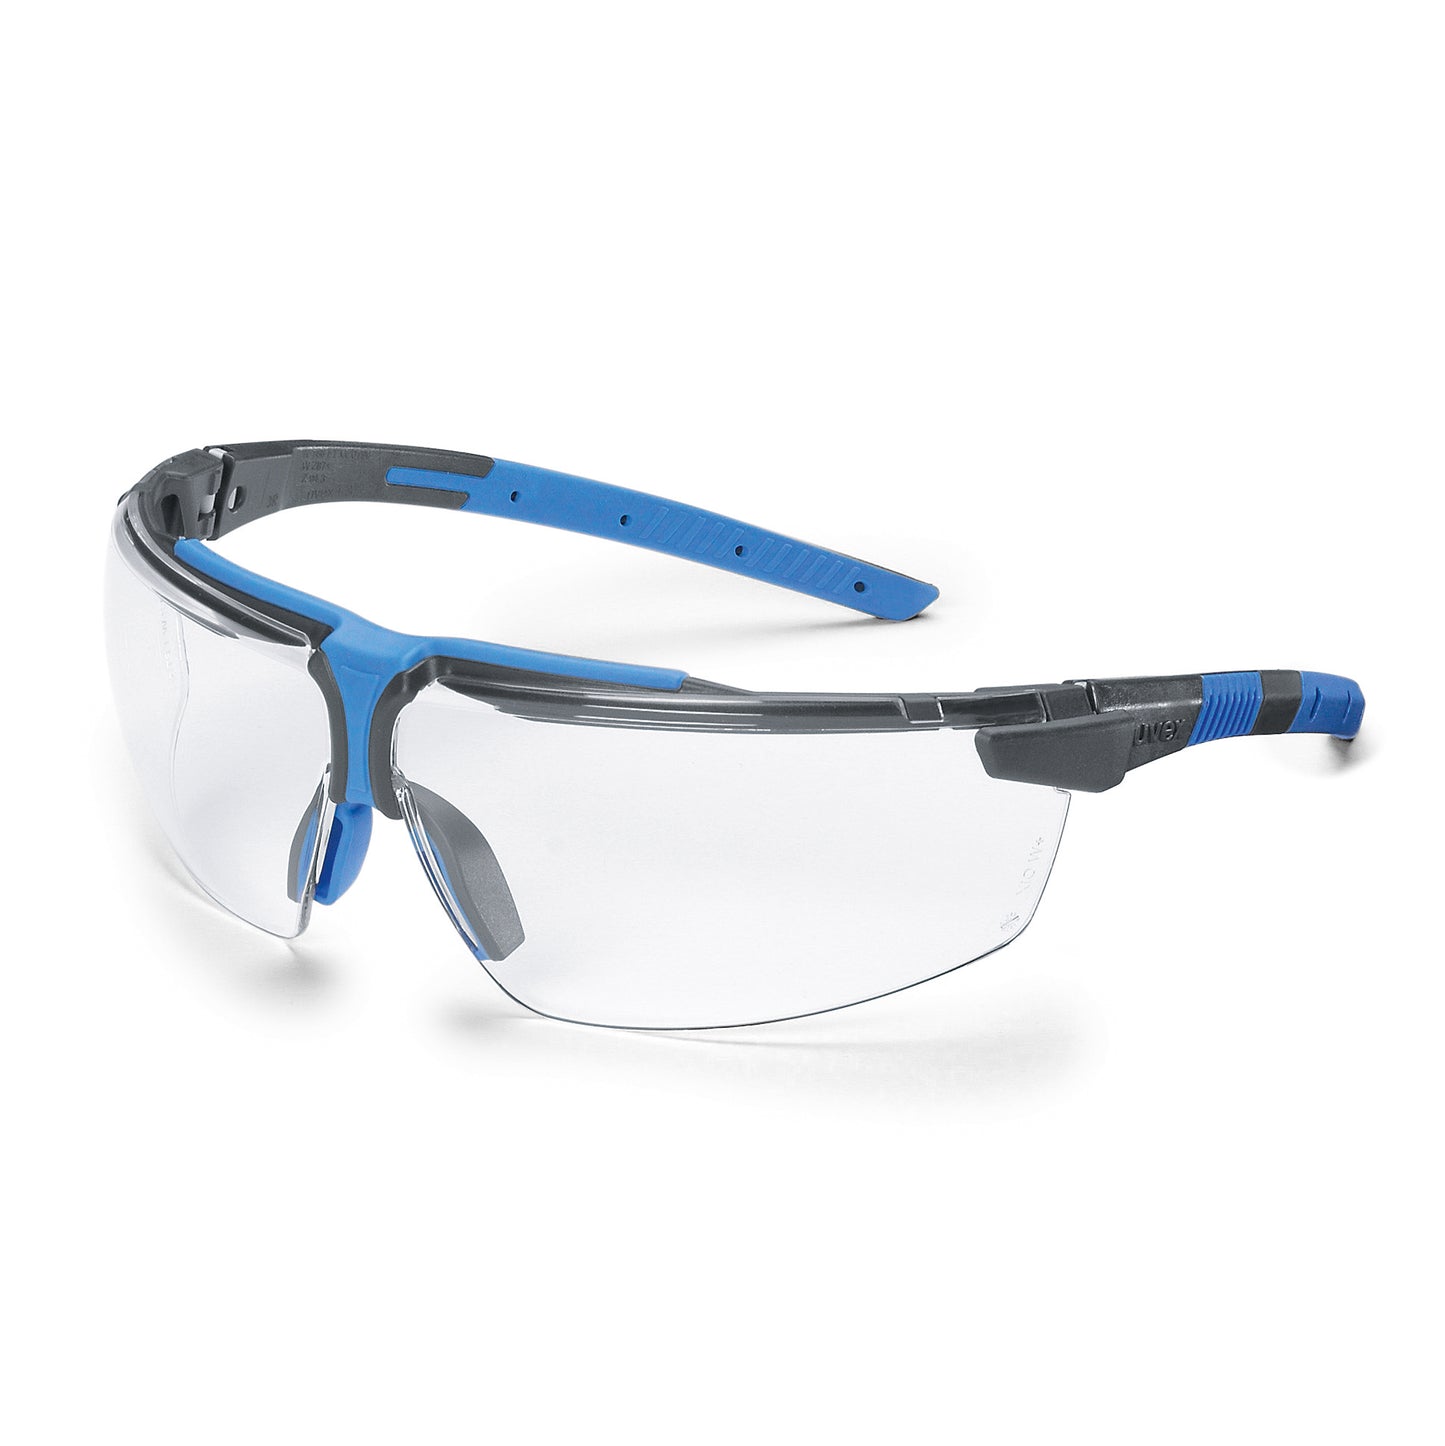 uvex i-3 Wraparound Sports Safety Glasses